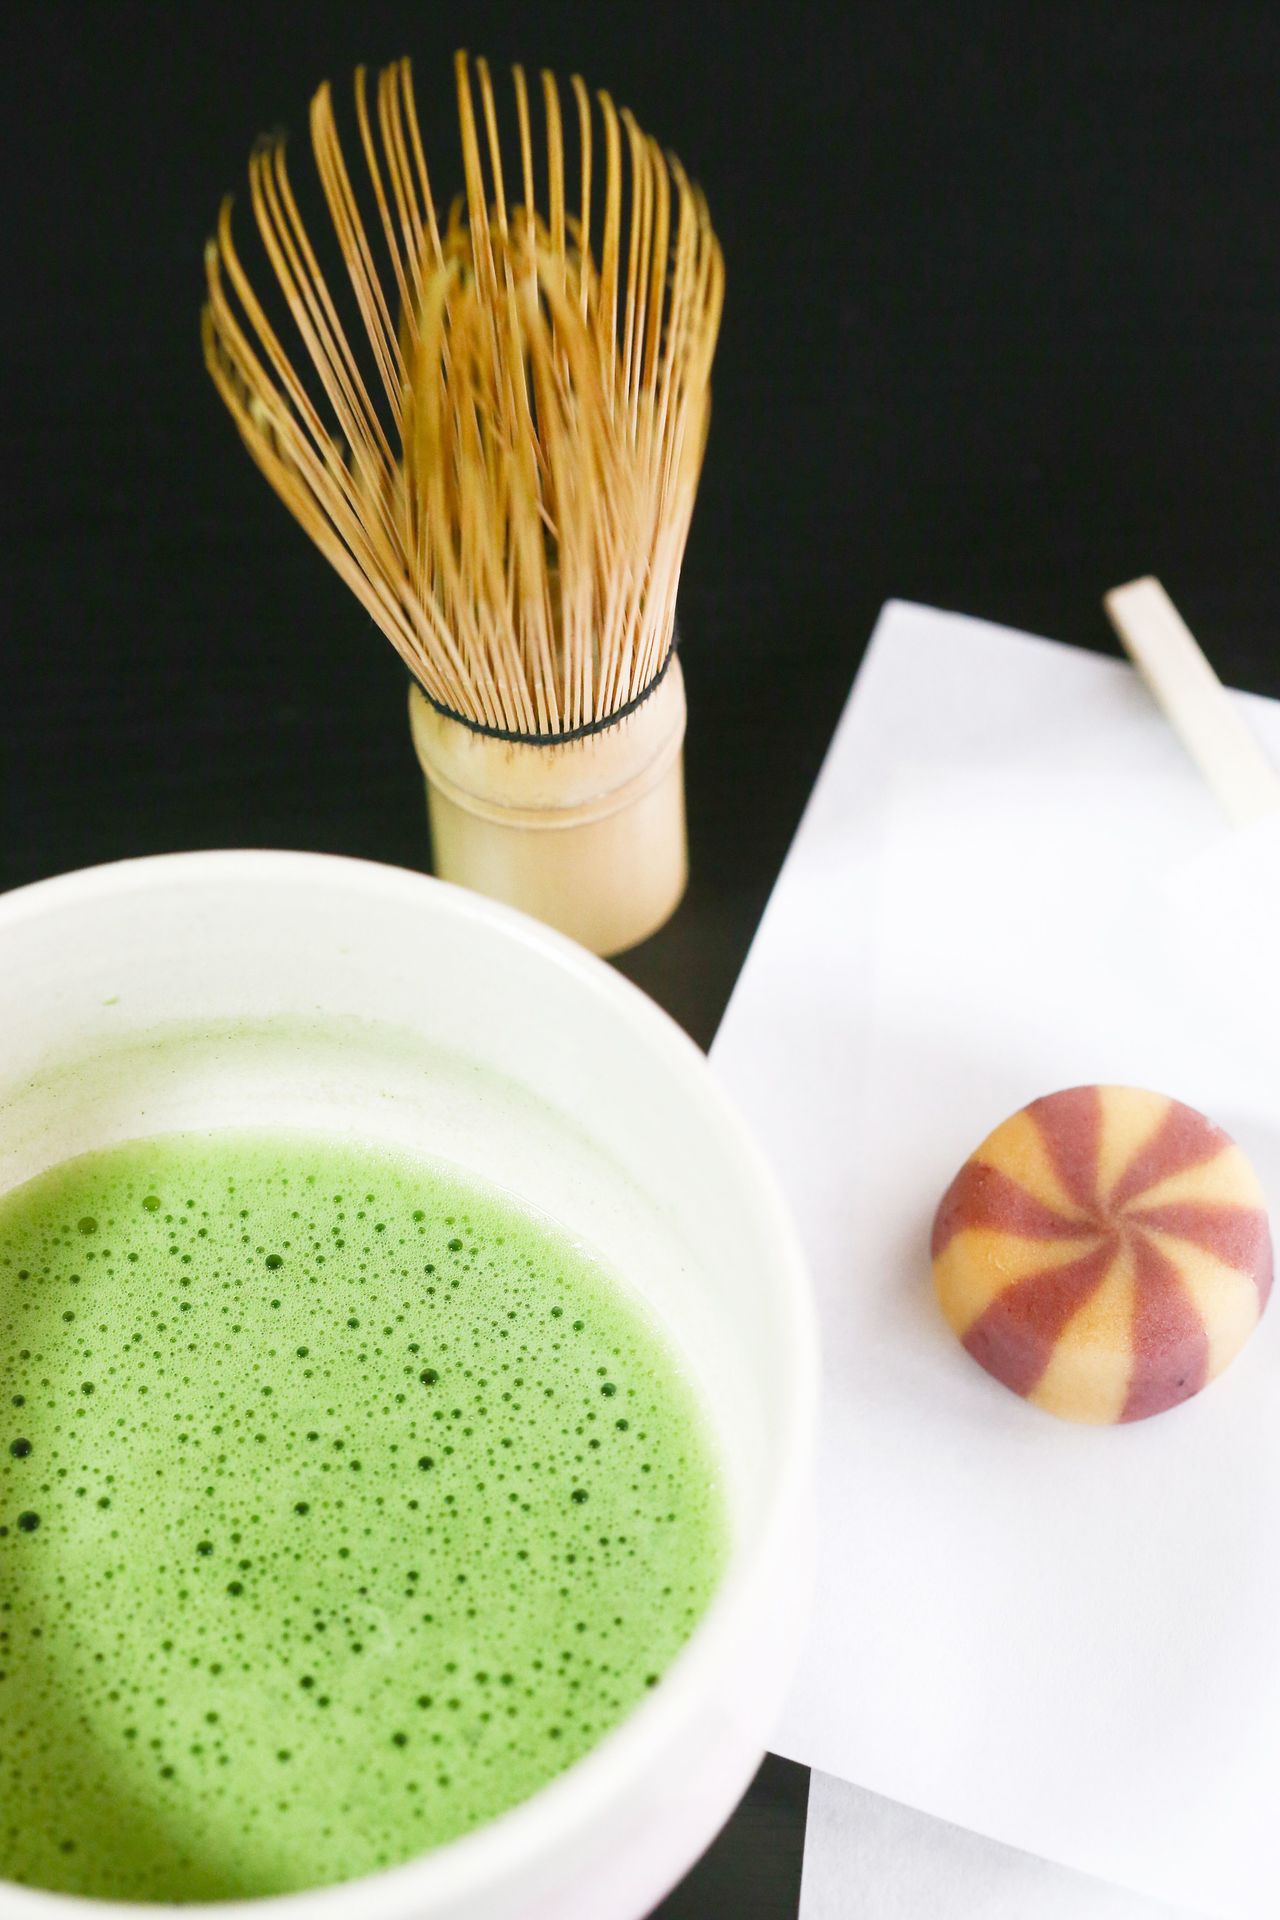 一向被視為健康象徵的日本綠茶，磨成粉末狀後可隨意加入牛奶或以熱水沖泡。